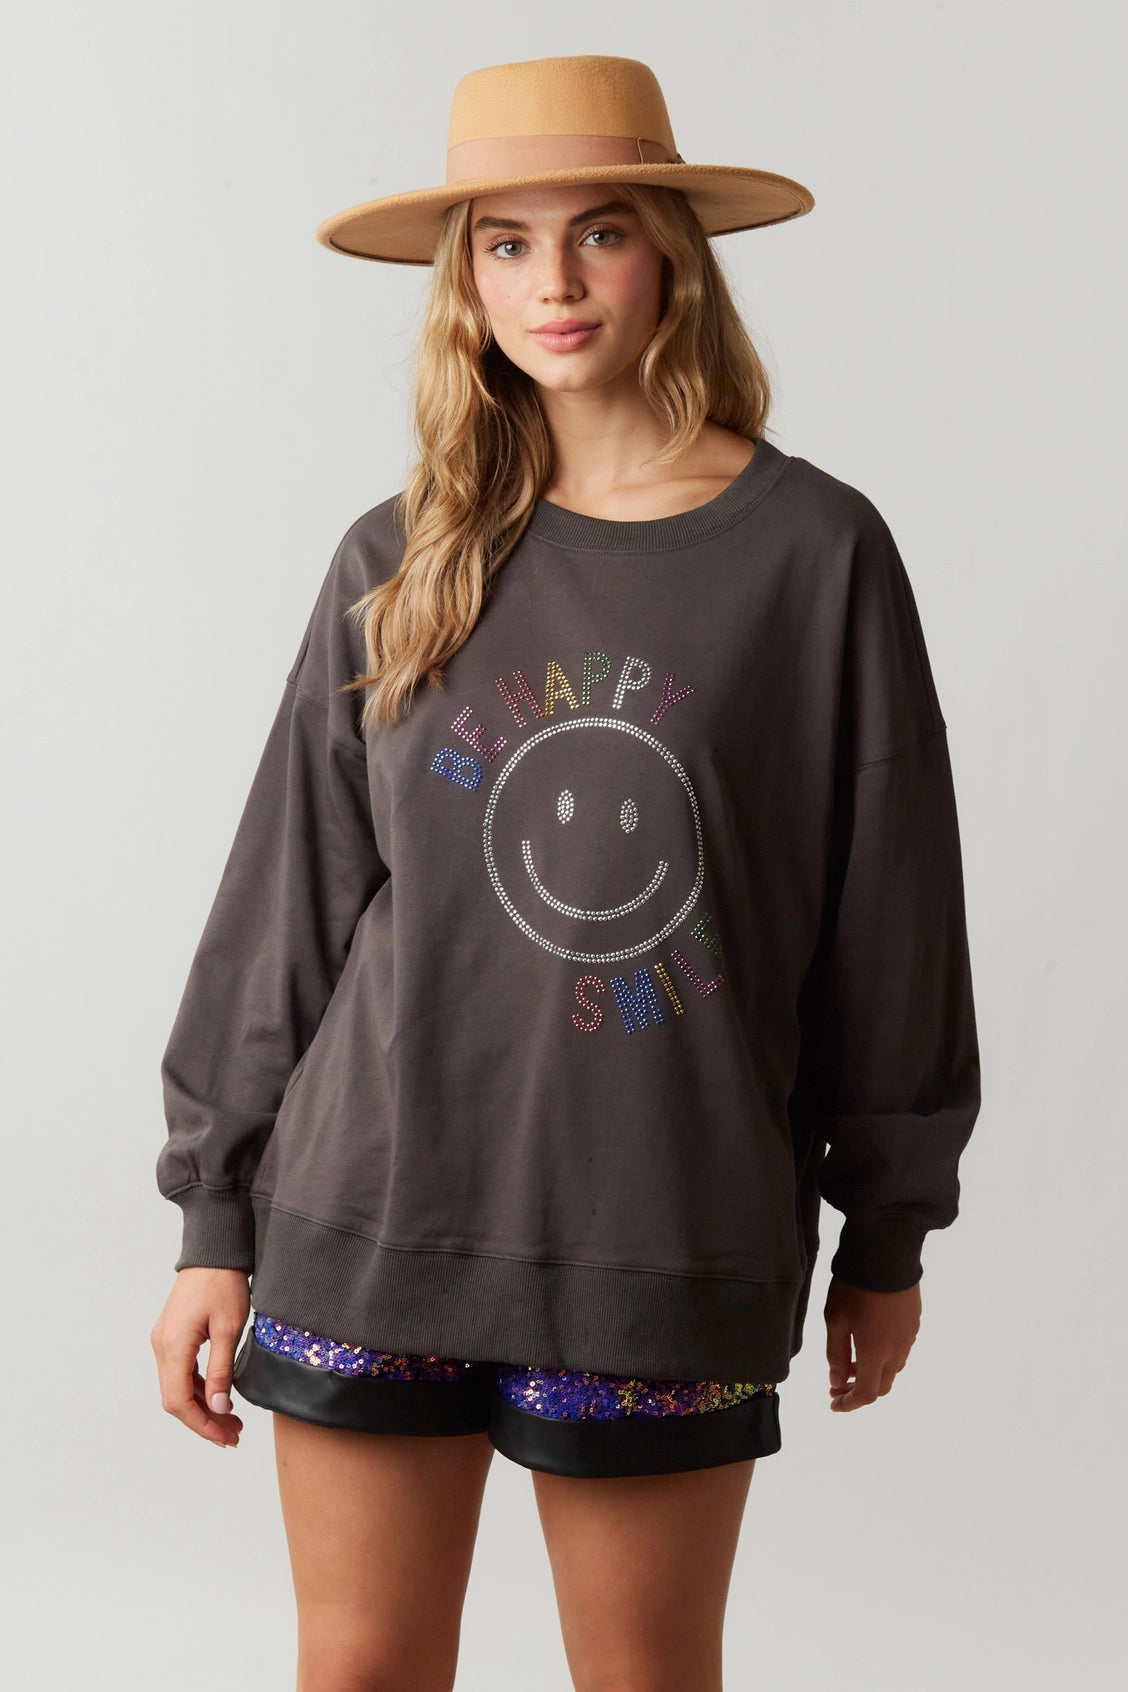 Be Happy Smiley Face Sweatshirt